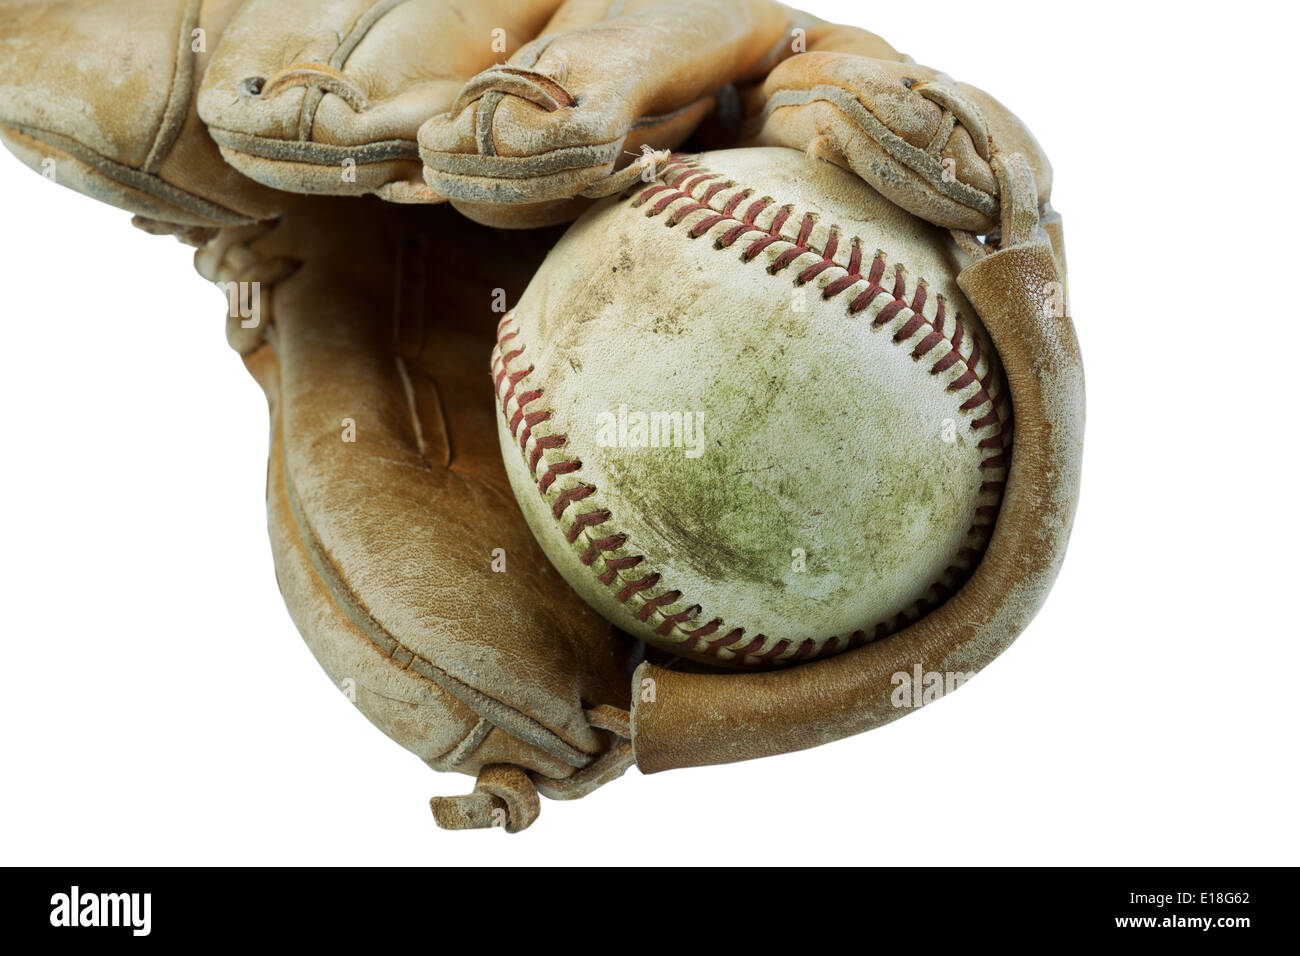 Photo horizontale gros plan d'un vieux sale à l'intérieur d'un baseball gant très utilisé isolated on white Banque D'Images